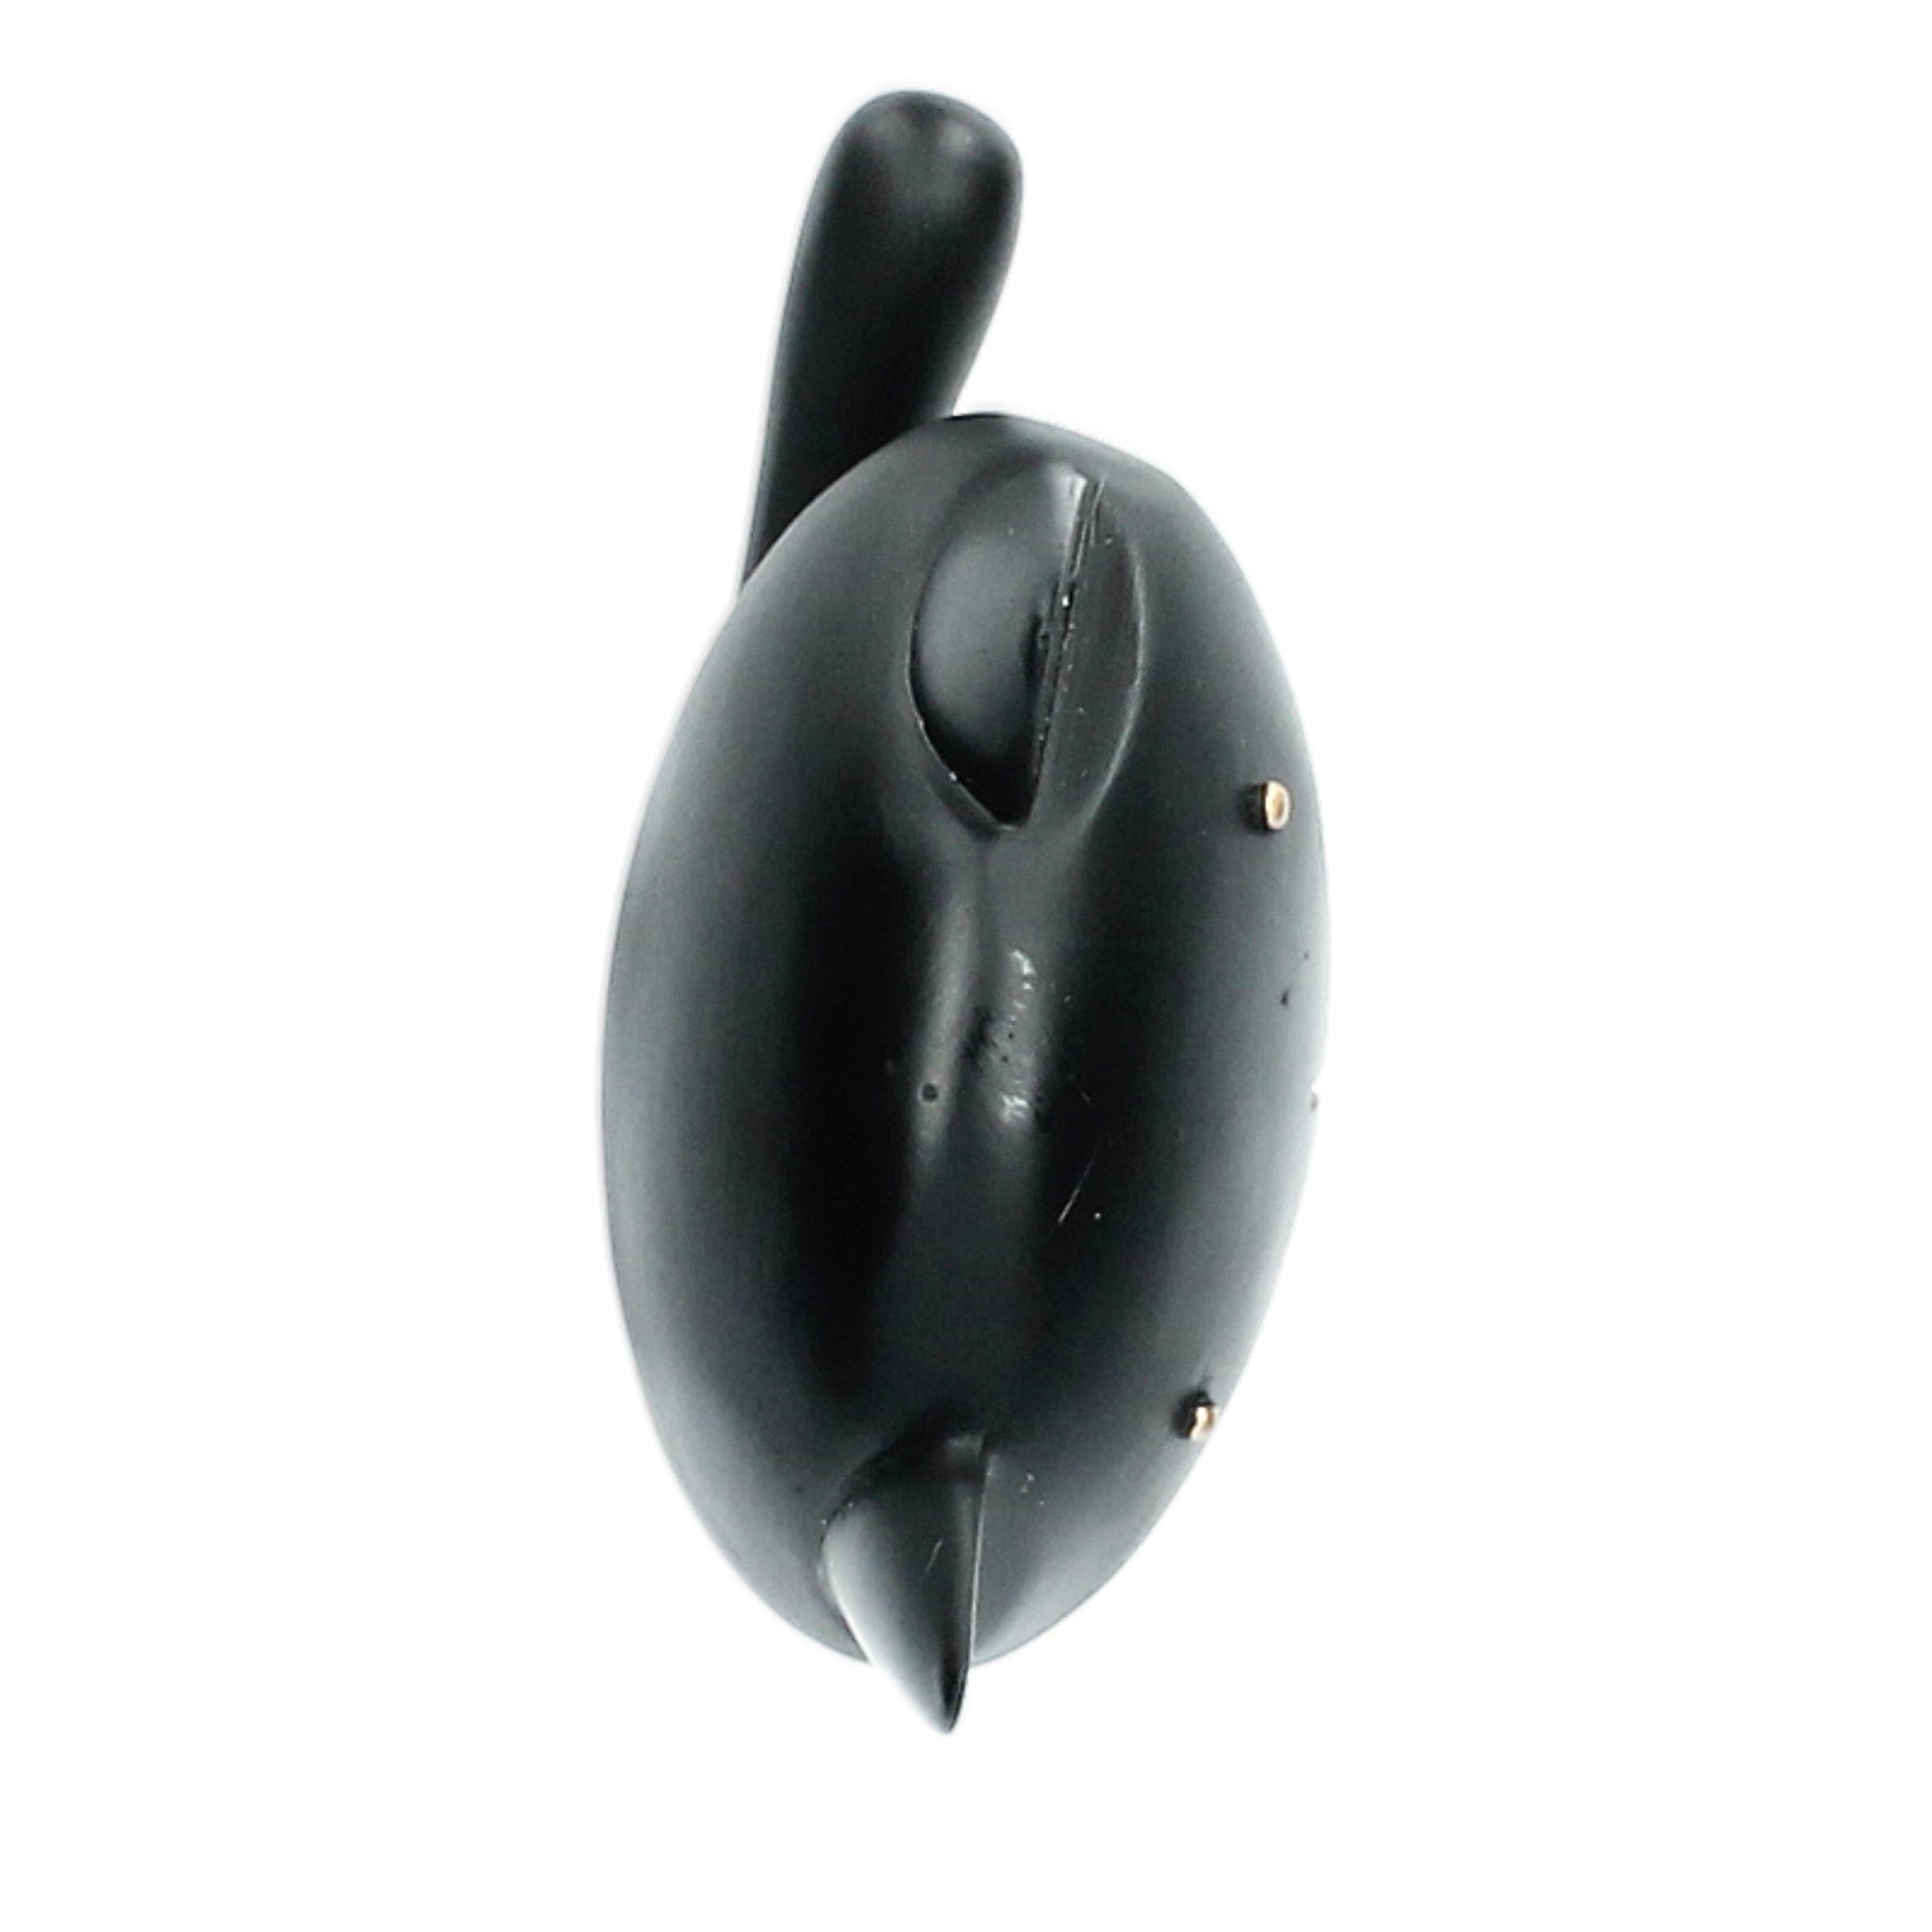 Estatua de un pequeño gato negro con anillos - Decoración